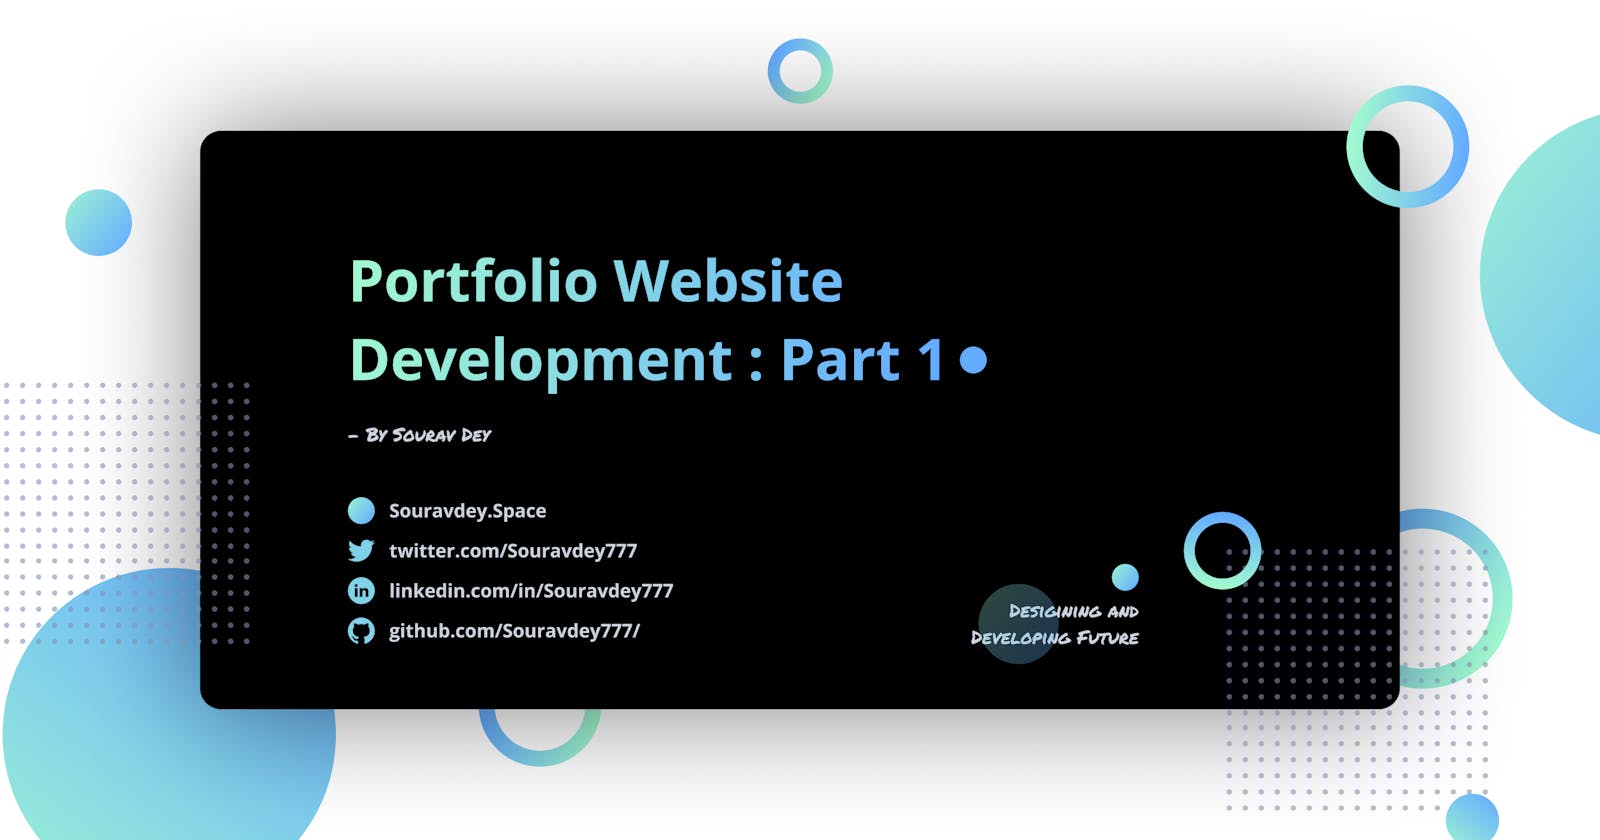 ⚡ Portfolio Website Development : Part 1